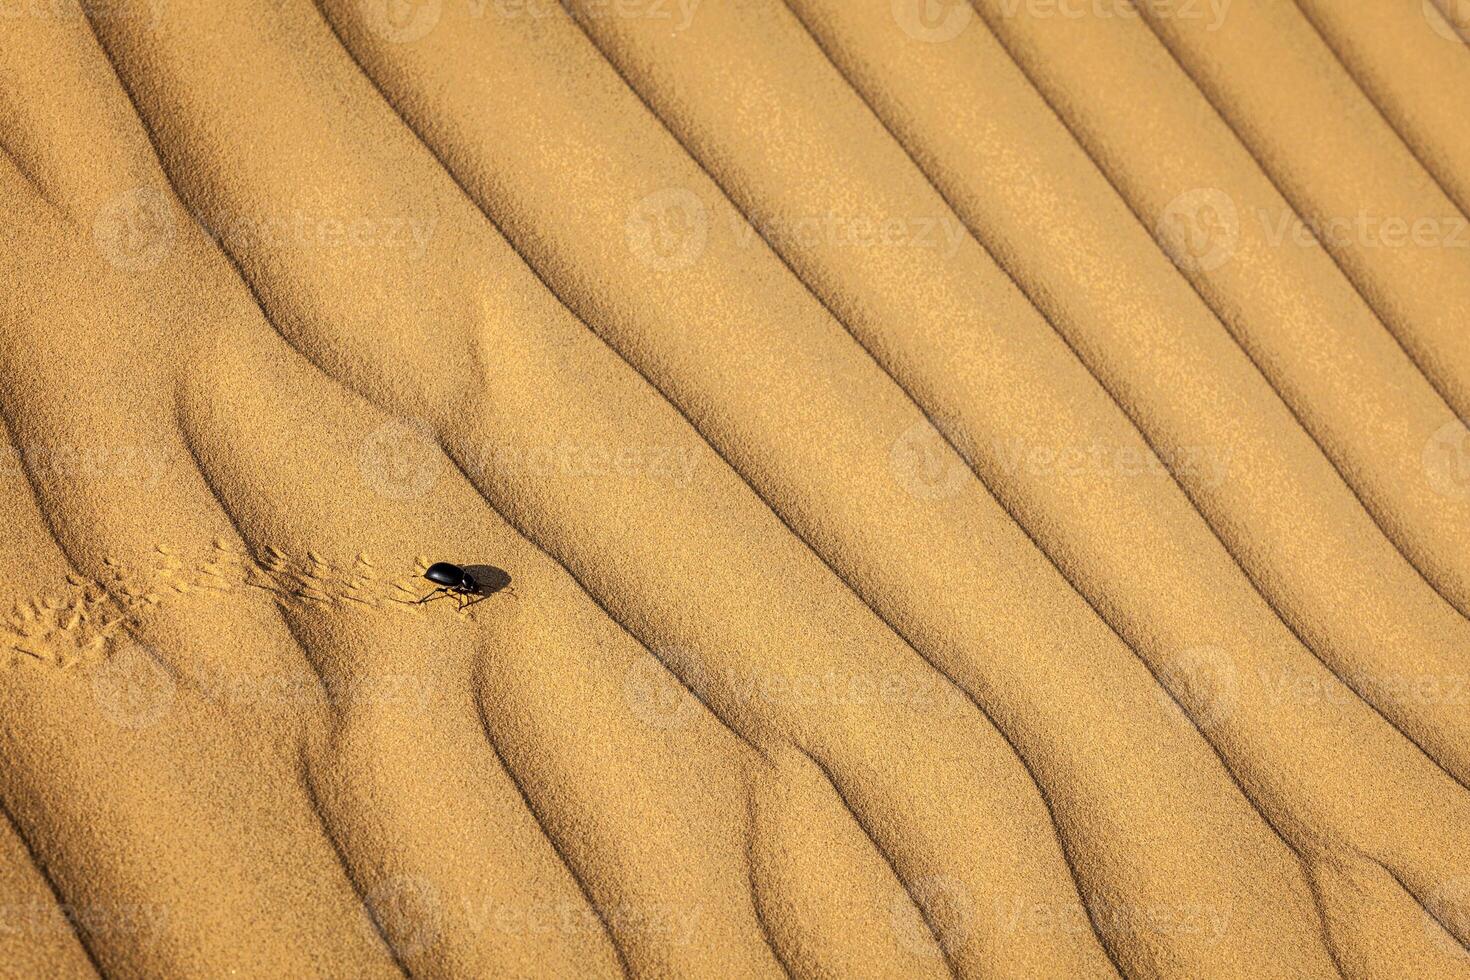 scarabée scarabée scarabée sur désert le sable photo